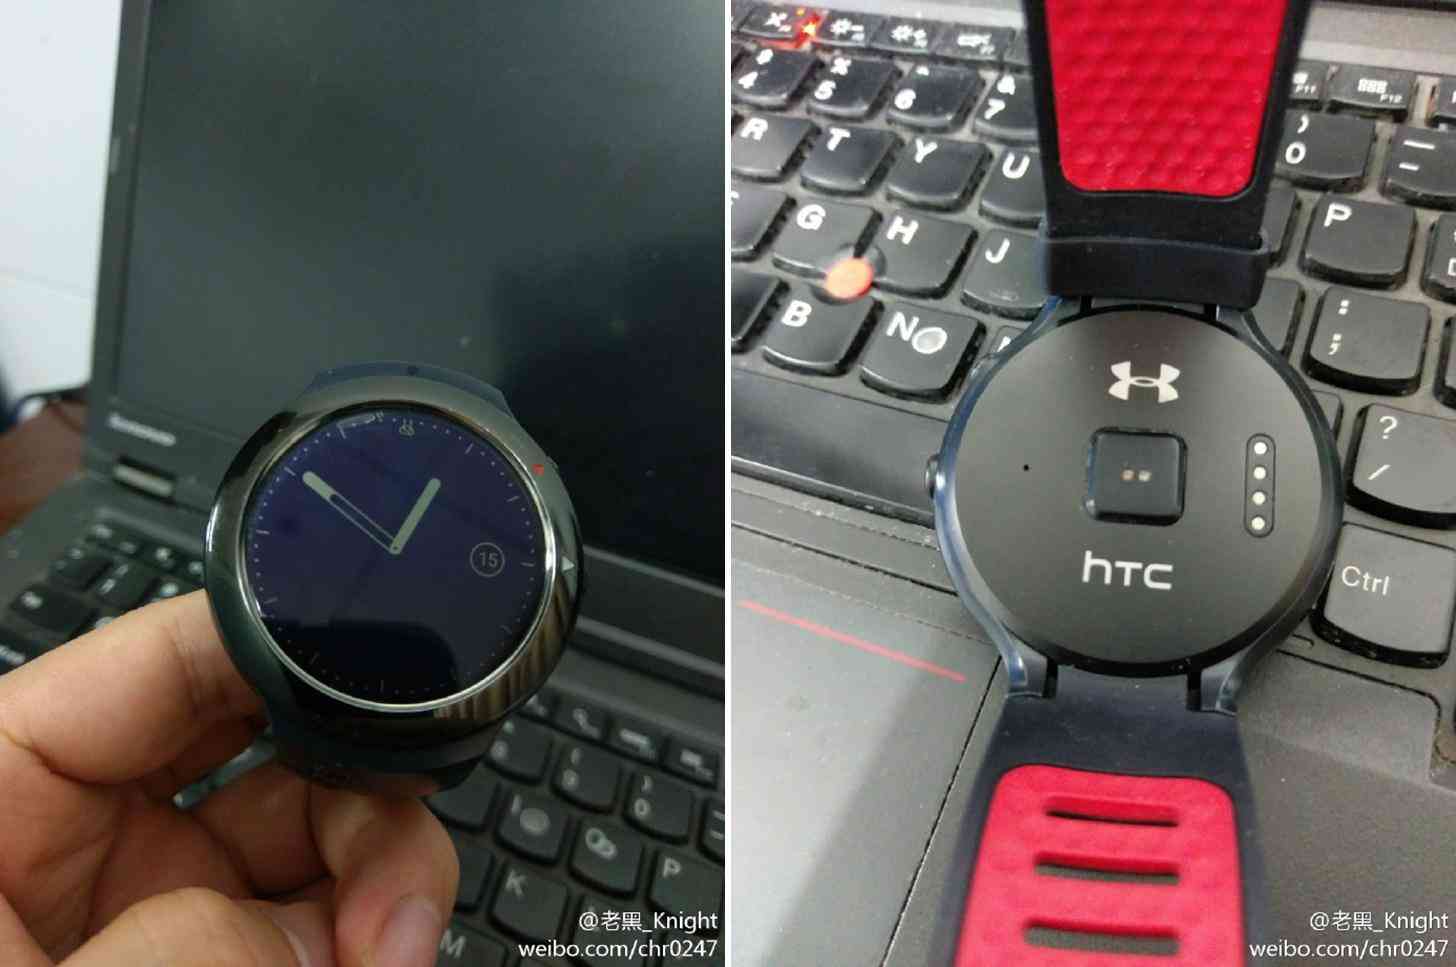 HTC Halfbeak Android Wear smartwatch photos leak